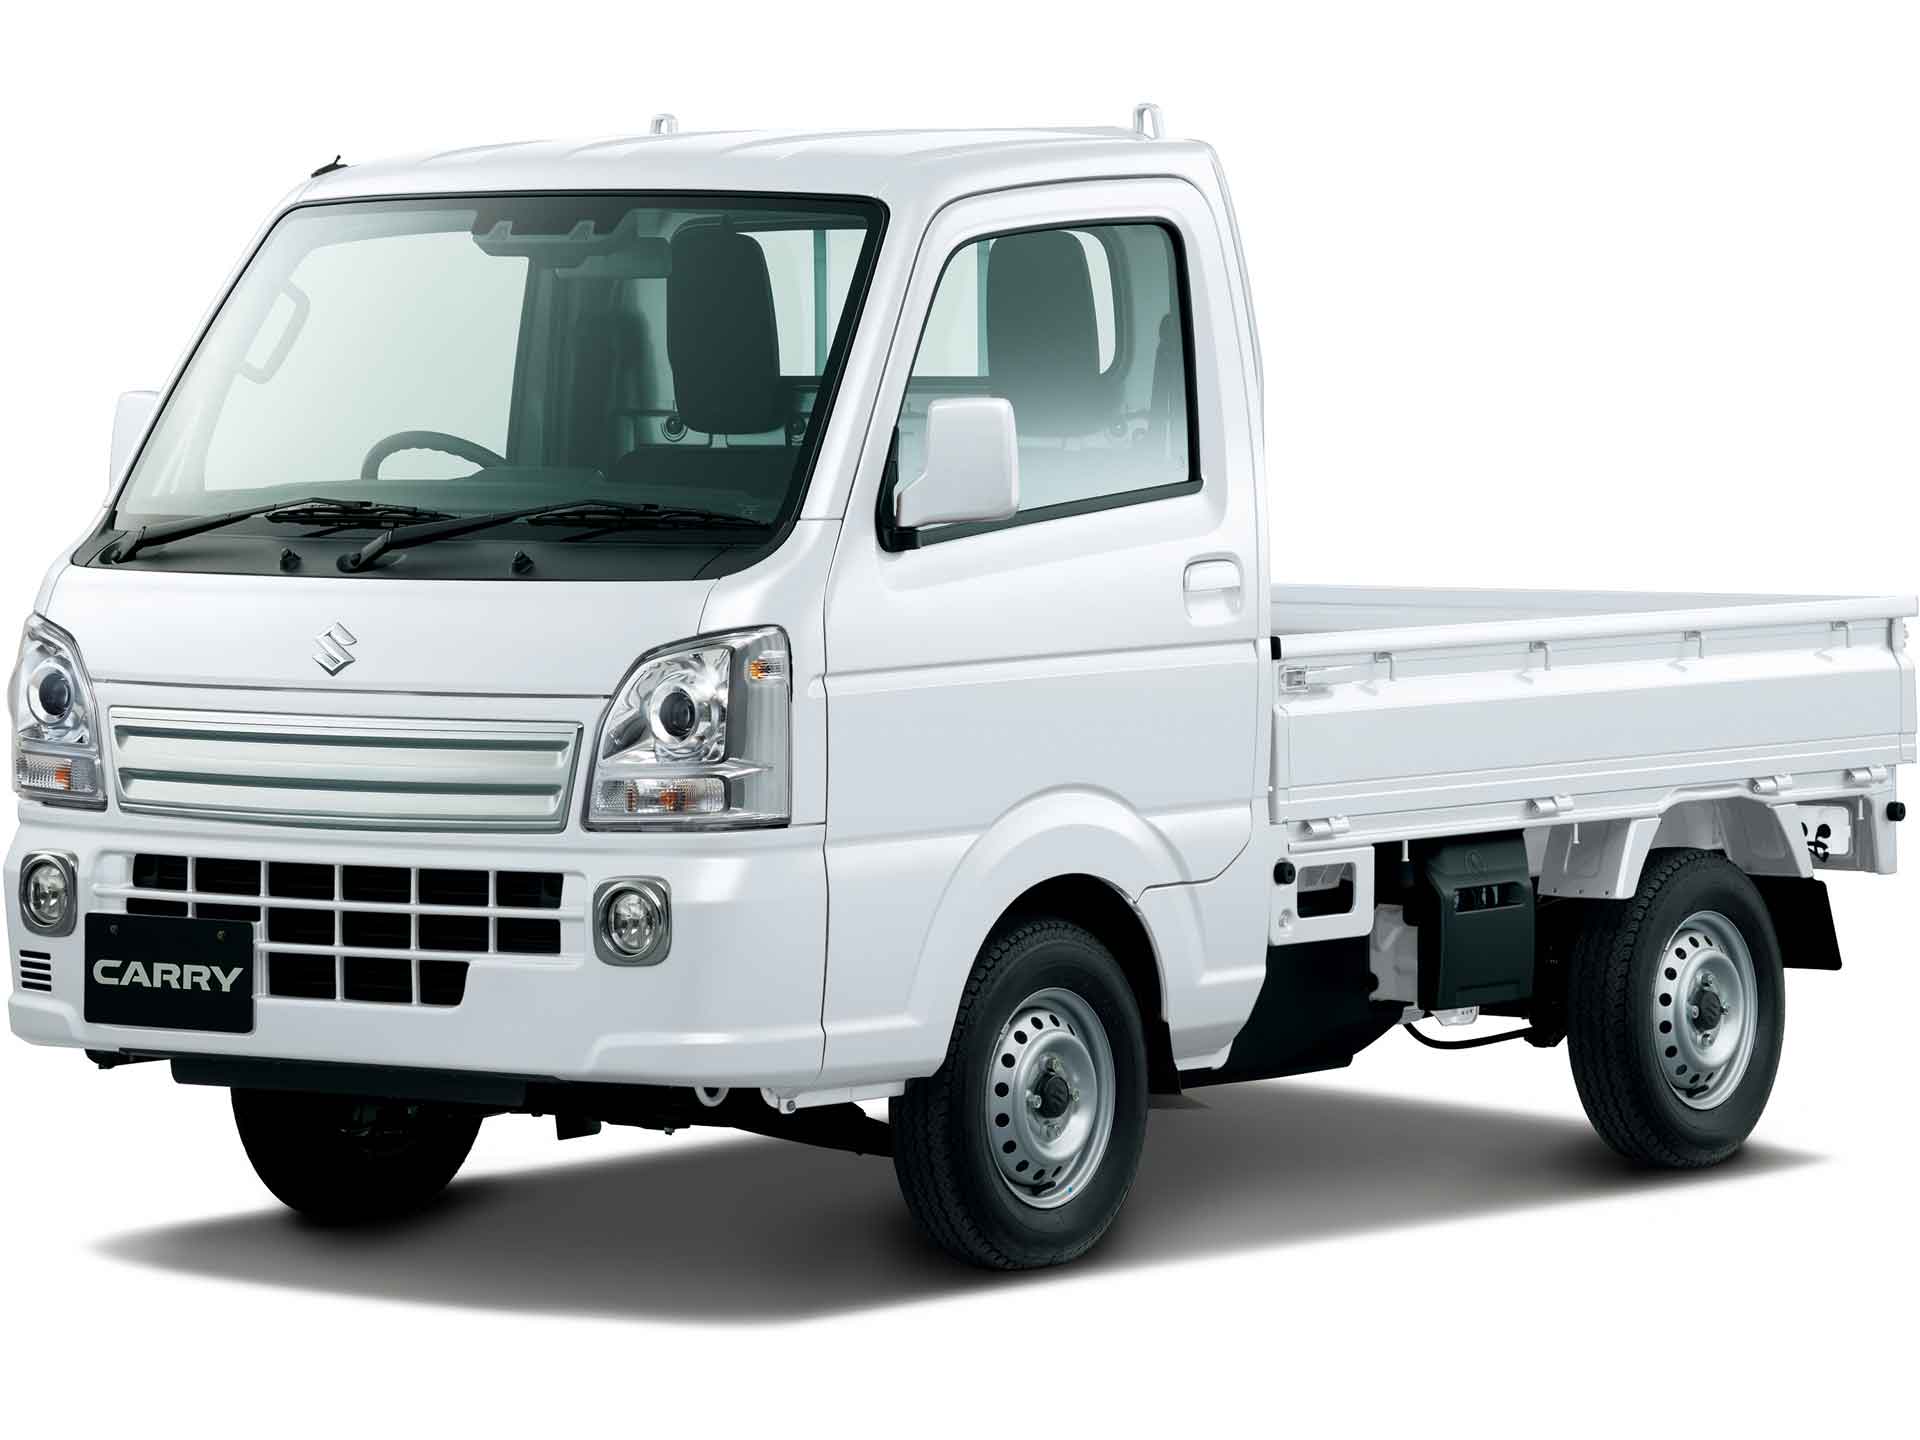 東京近郊限定 スズキ Suzuki キャリー 軽トラック 白 2WD - 自動車本体